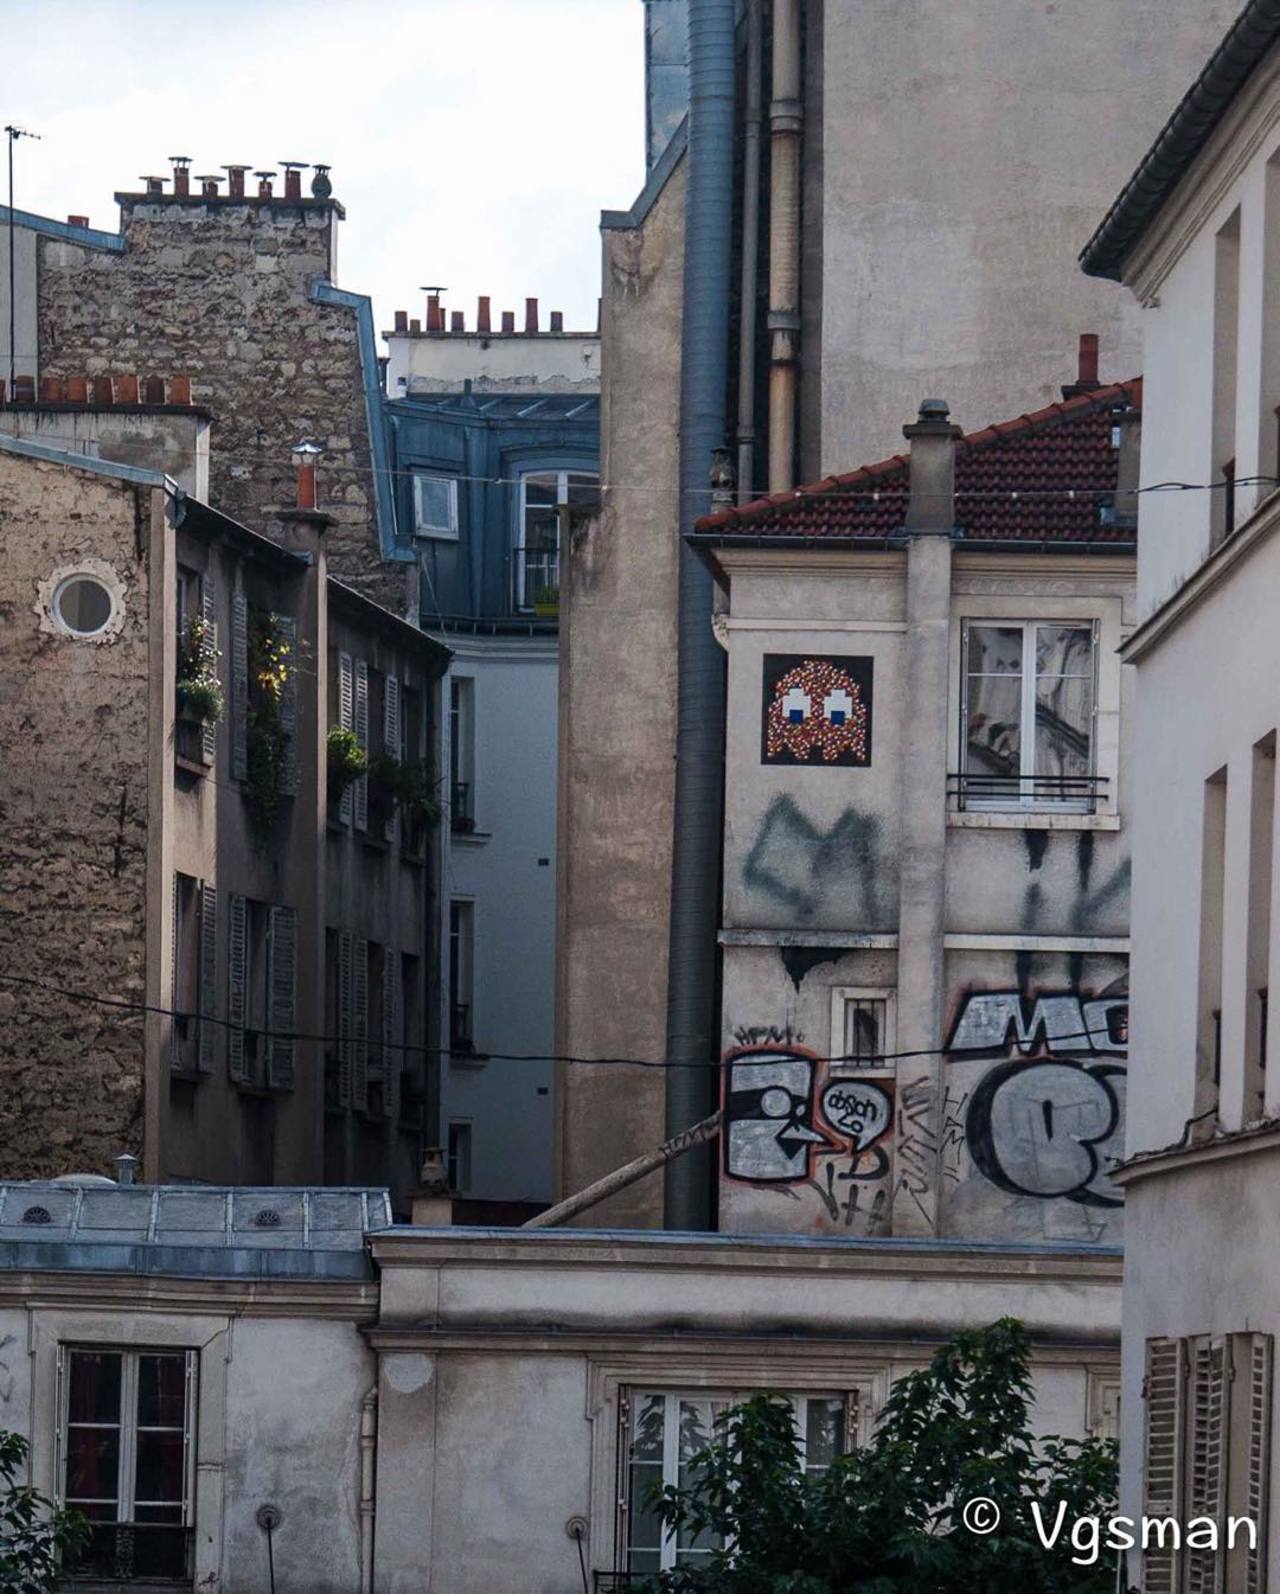 #Paris #graffiti photo by @vgsman http://ift.tt/1Lfz8Dk #StreetArt http://t.co/9ZSbQWeHAD